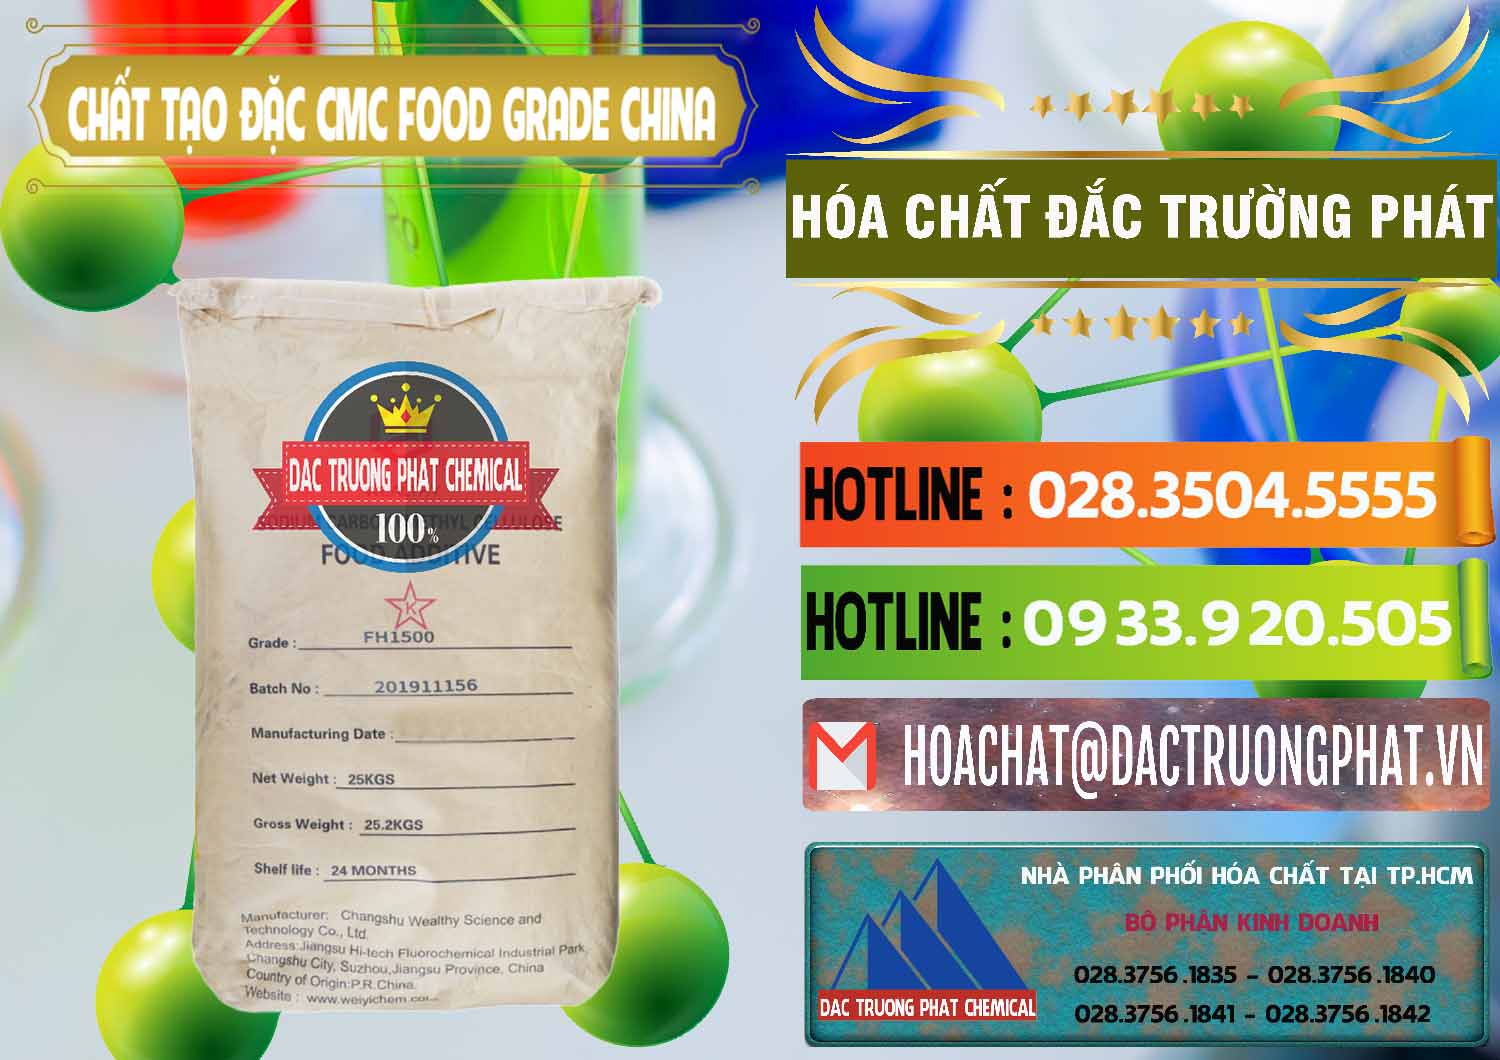 Bán _ phân phối Chất Tạo Đặc CMC Wealthy Food Grade Trung Quốc China - 0426 - Nhà nhập khẩu ( phân phối ) hóa chất tại TP.HCM - cungcaphoachat.com.vn